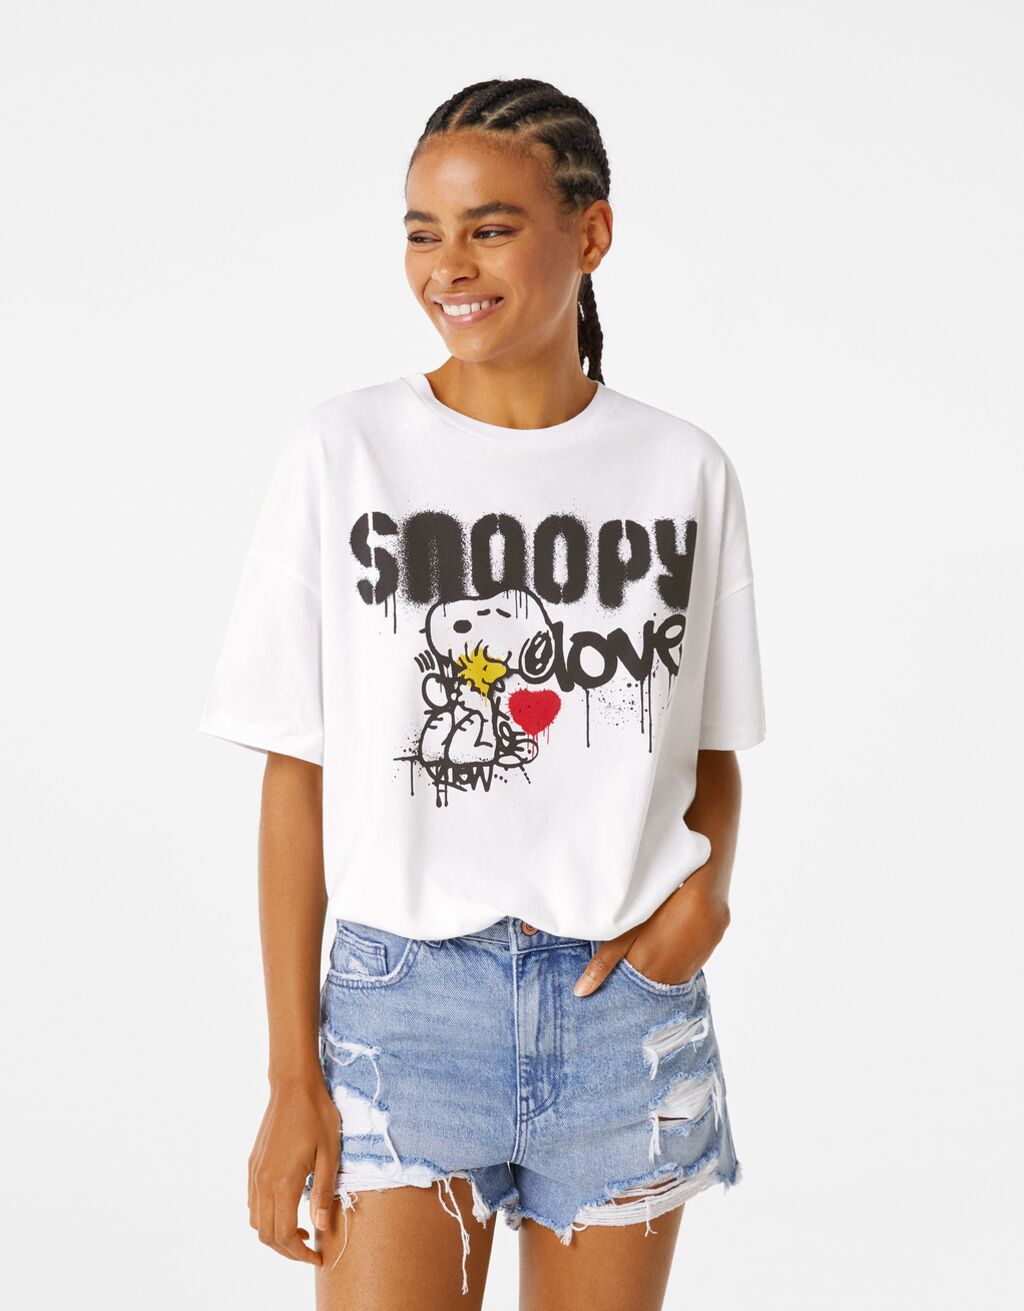 Tričko s krátkým rukávem s potiskem „Snoopy love“